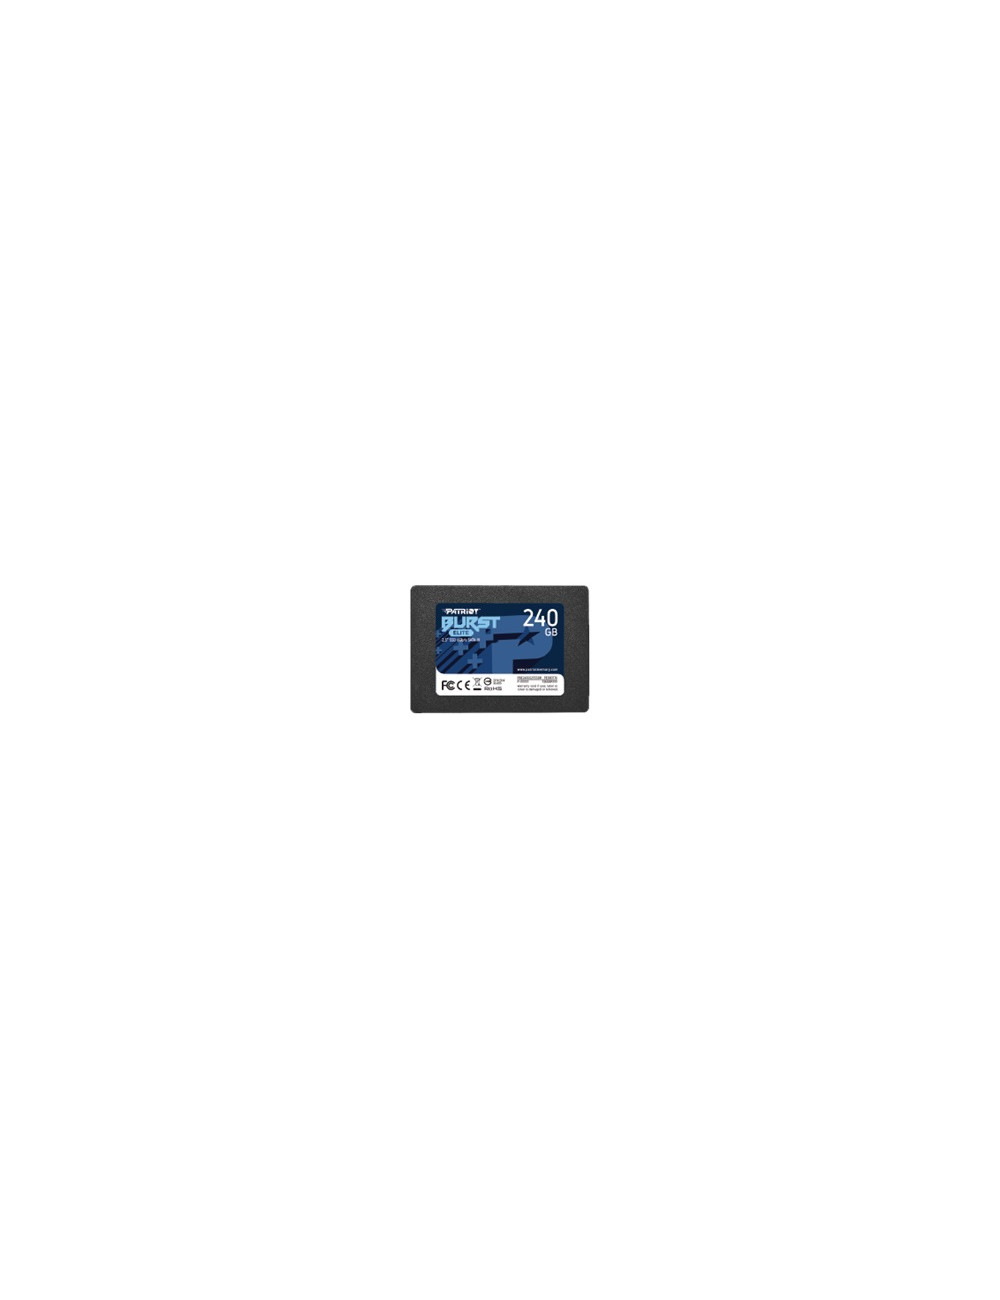 PATRIOT Burst Elite 240GB SATA 3 2.5inch